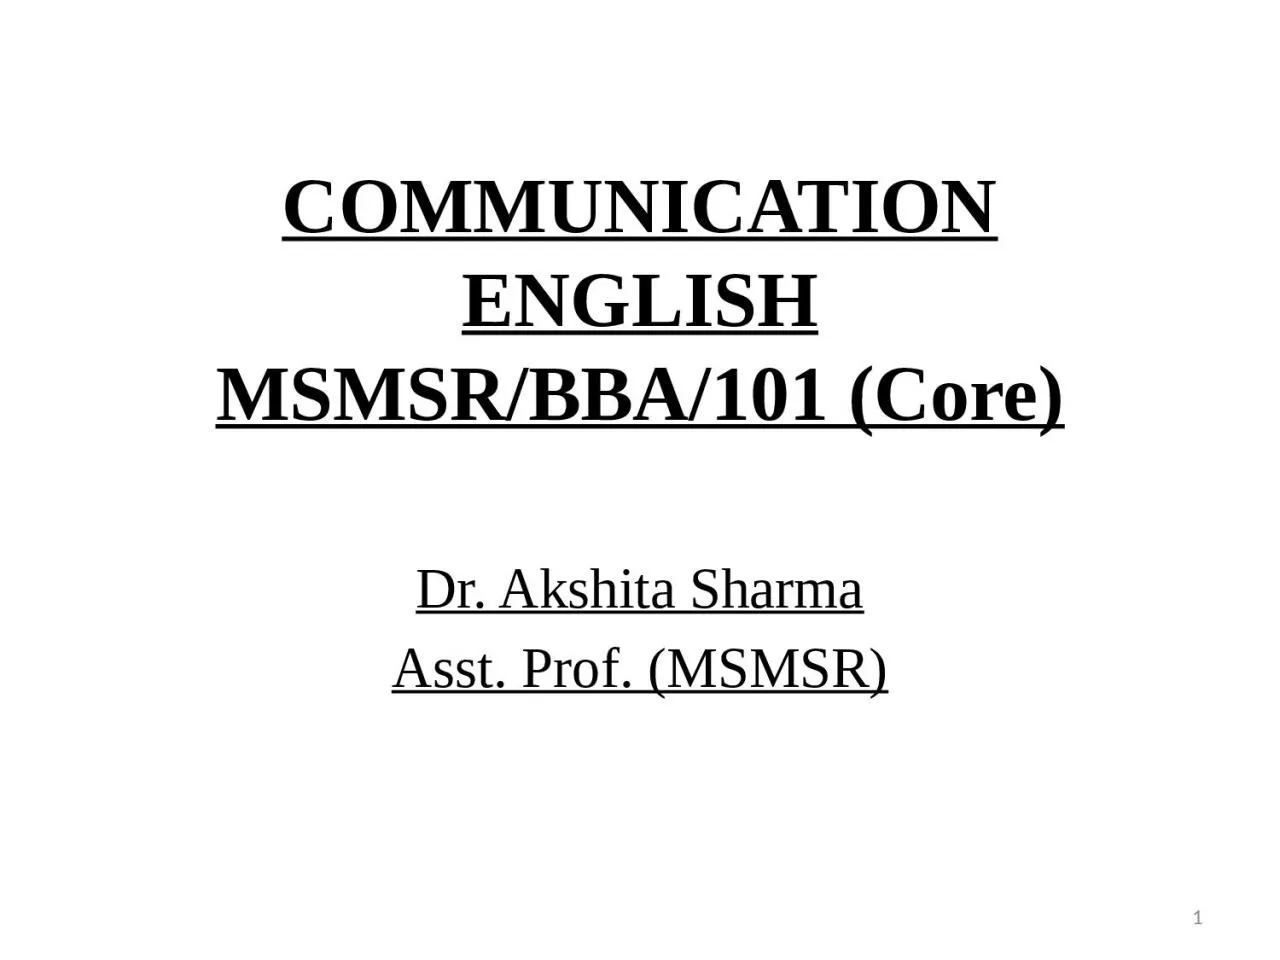 COMMUNICATION ENGLISH MSMSR/BBA/101 (Core)